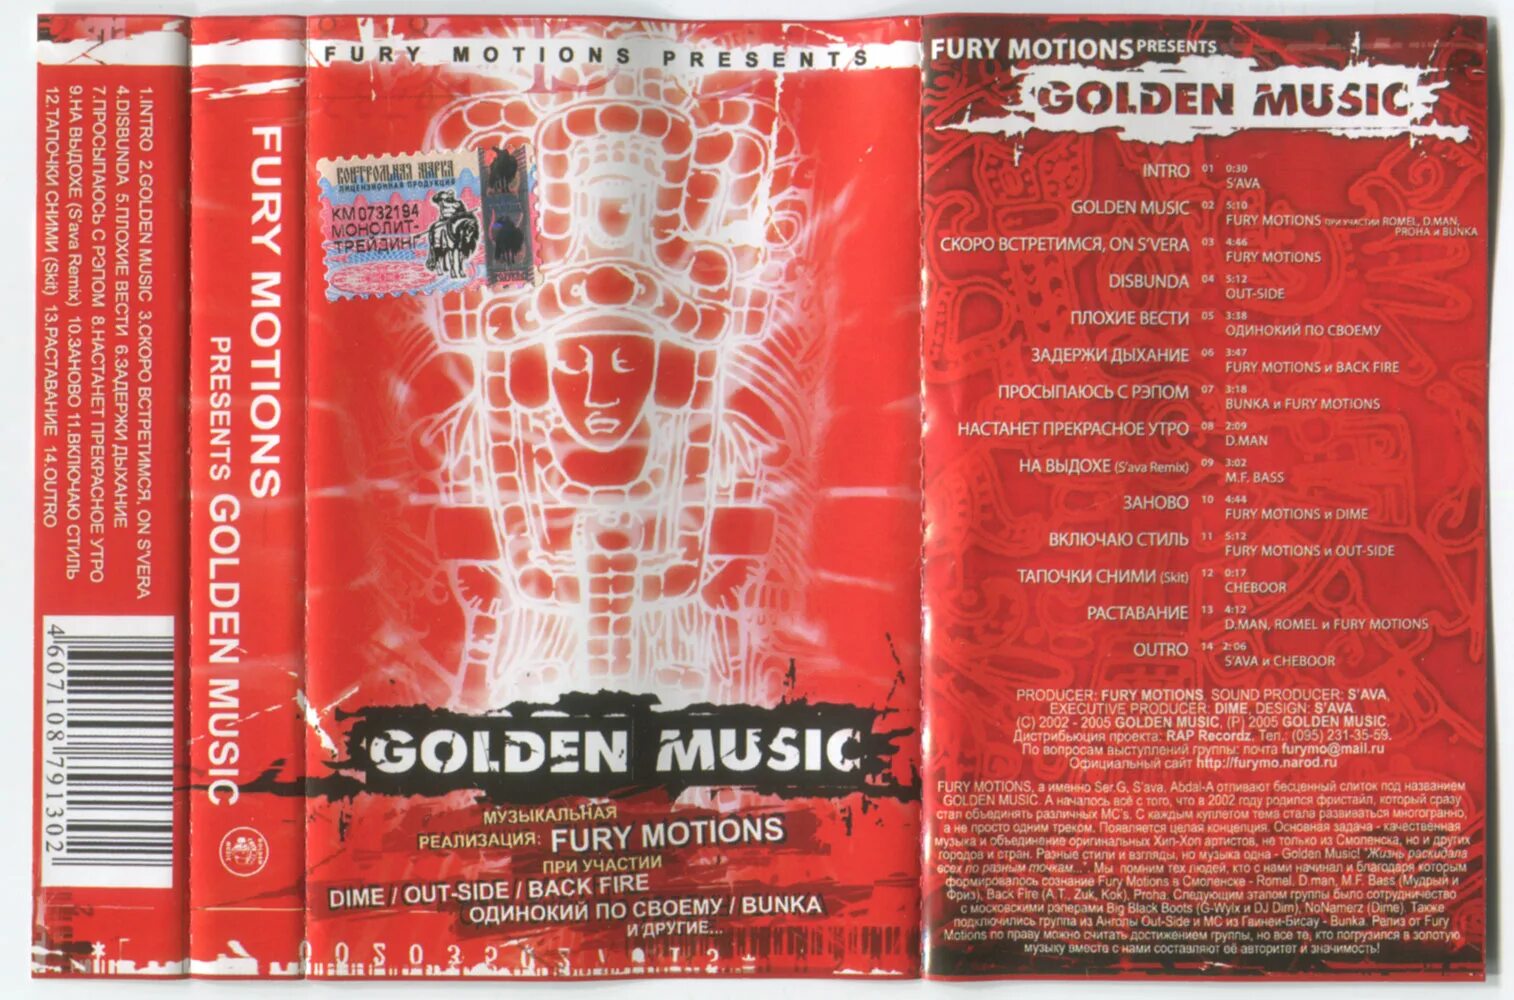 Fury Motions группа. Русский рэп 2005. Fury Motions Golden Music обложка. Музыка-2005-х. Песни 2005 зарубежные